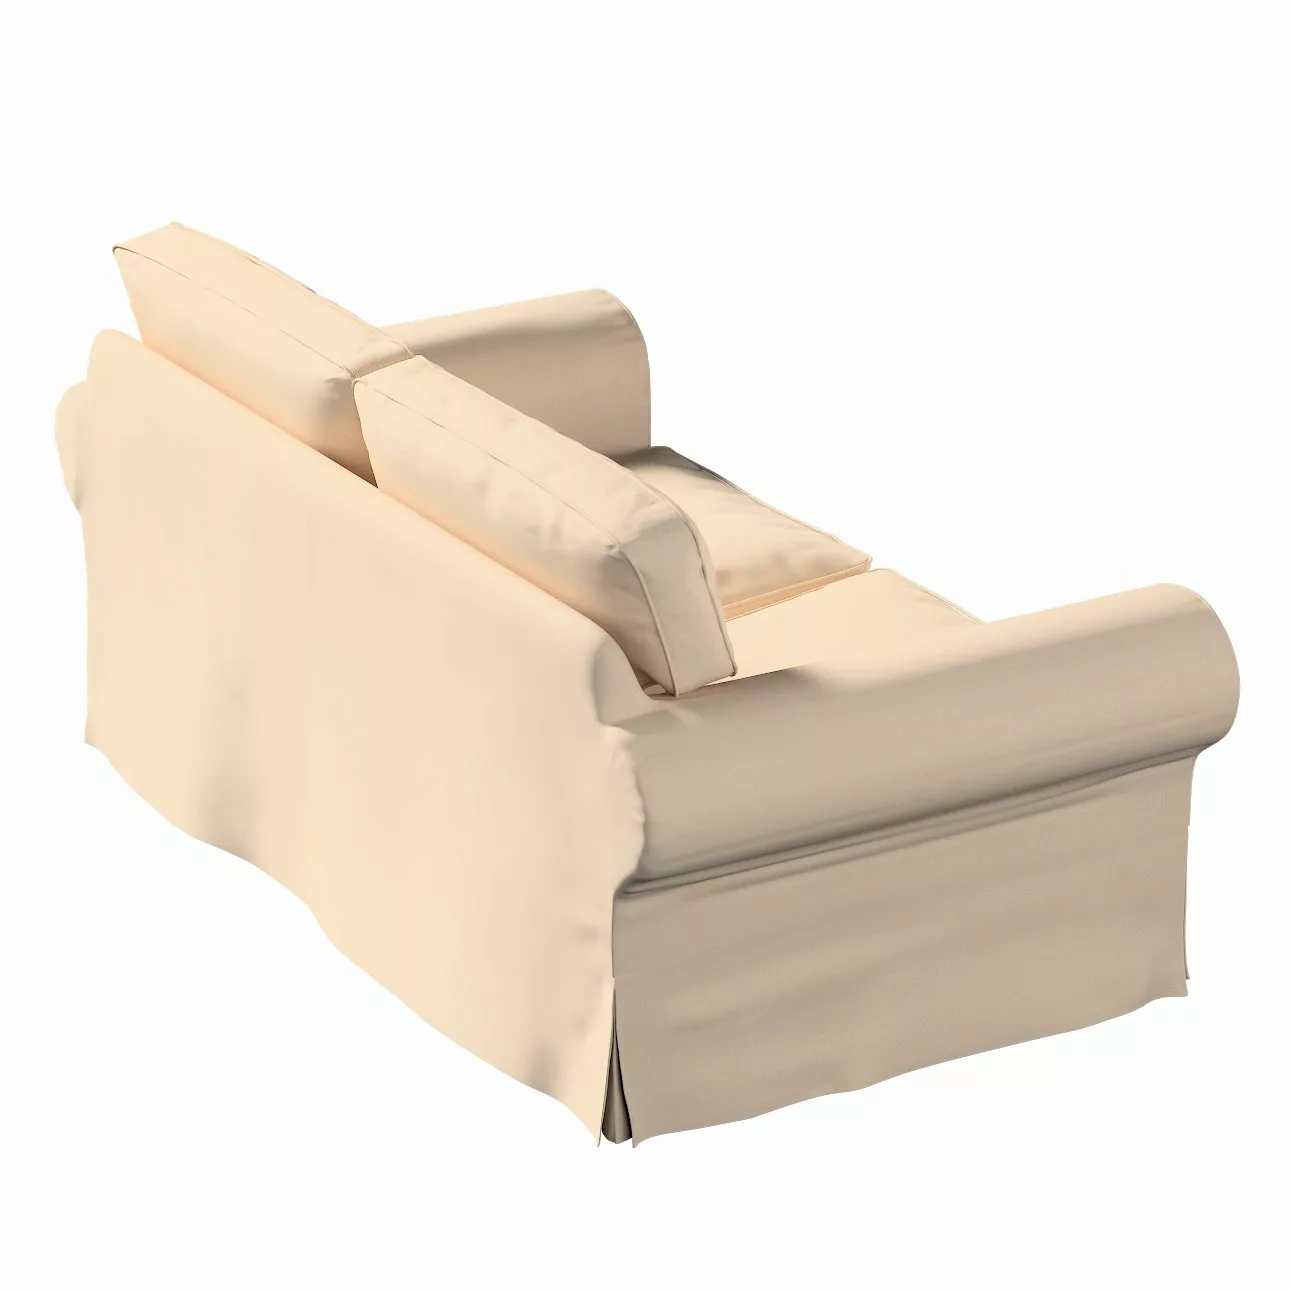 Bezug für Ektorp 2-Sitzer Schlafsofa ALTES Modell, creme-beige, Sofabezug E günstig online kaufen